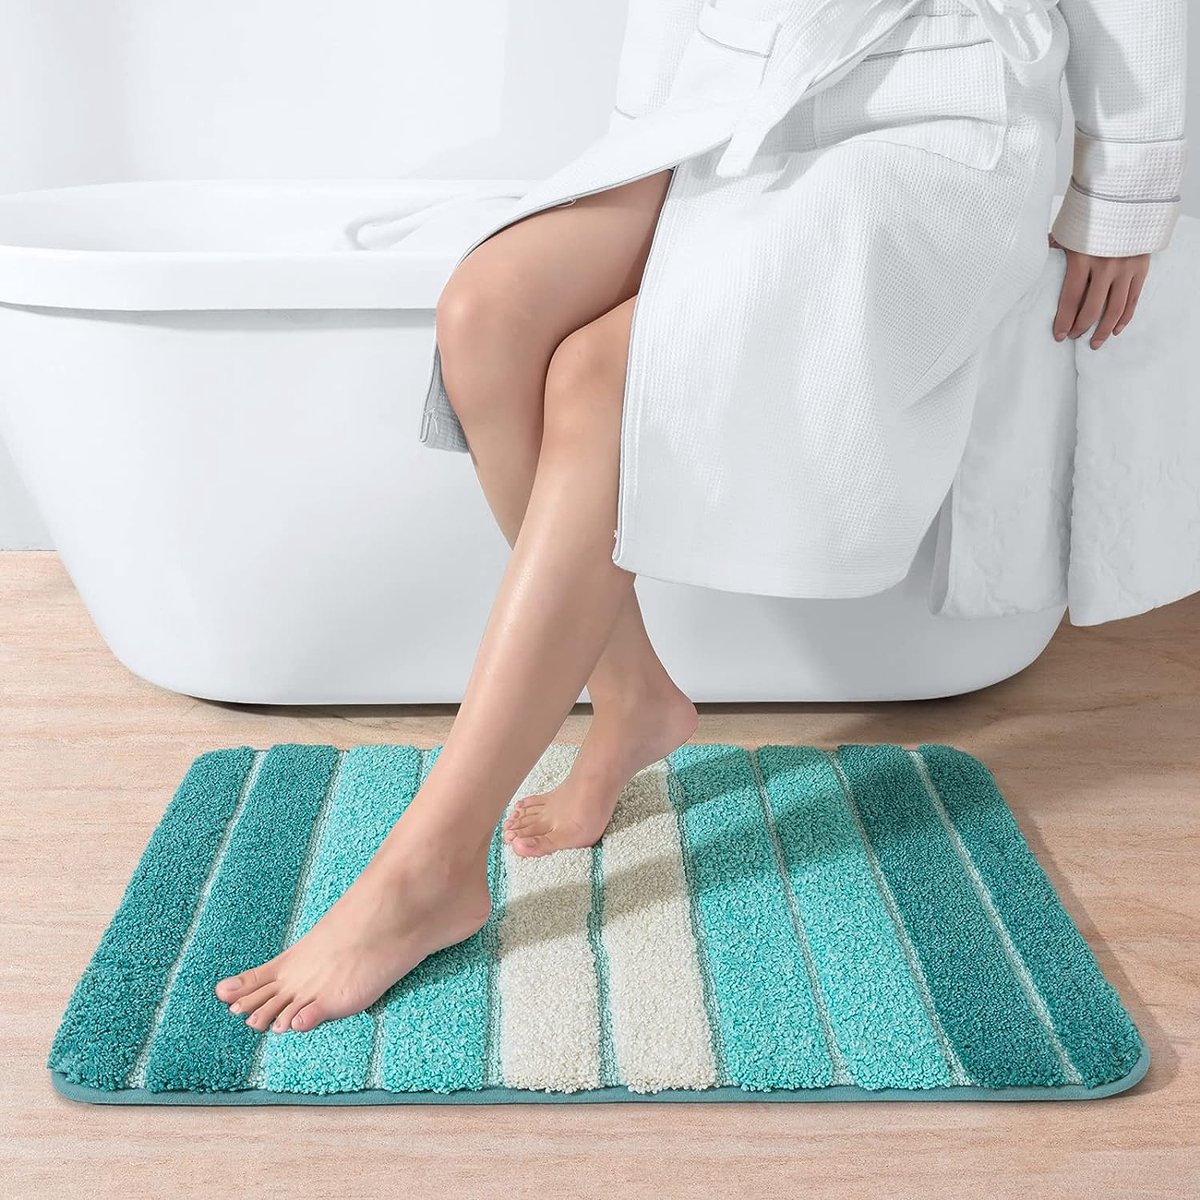 Badmat 60 x 110 cm antislip badkamermat super absorberend water, machinewasbaar, microvezel absorberende badkamermat, turkoois